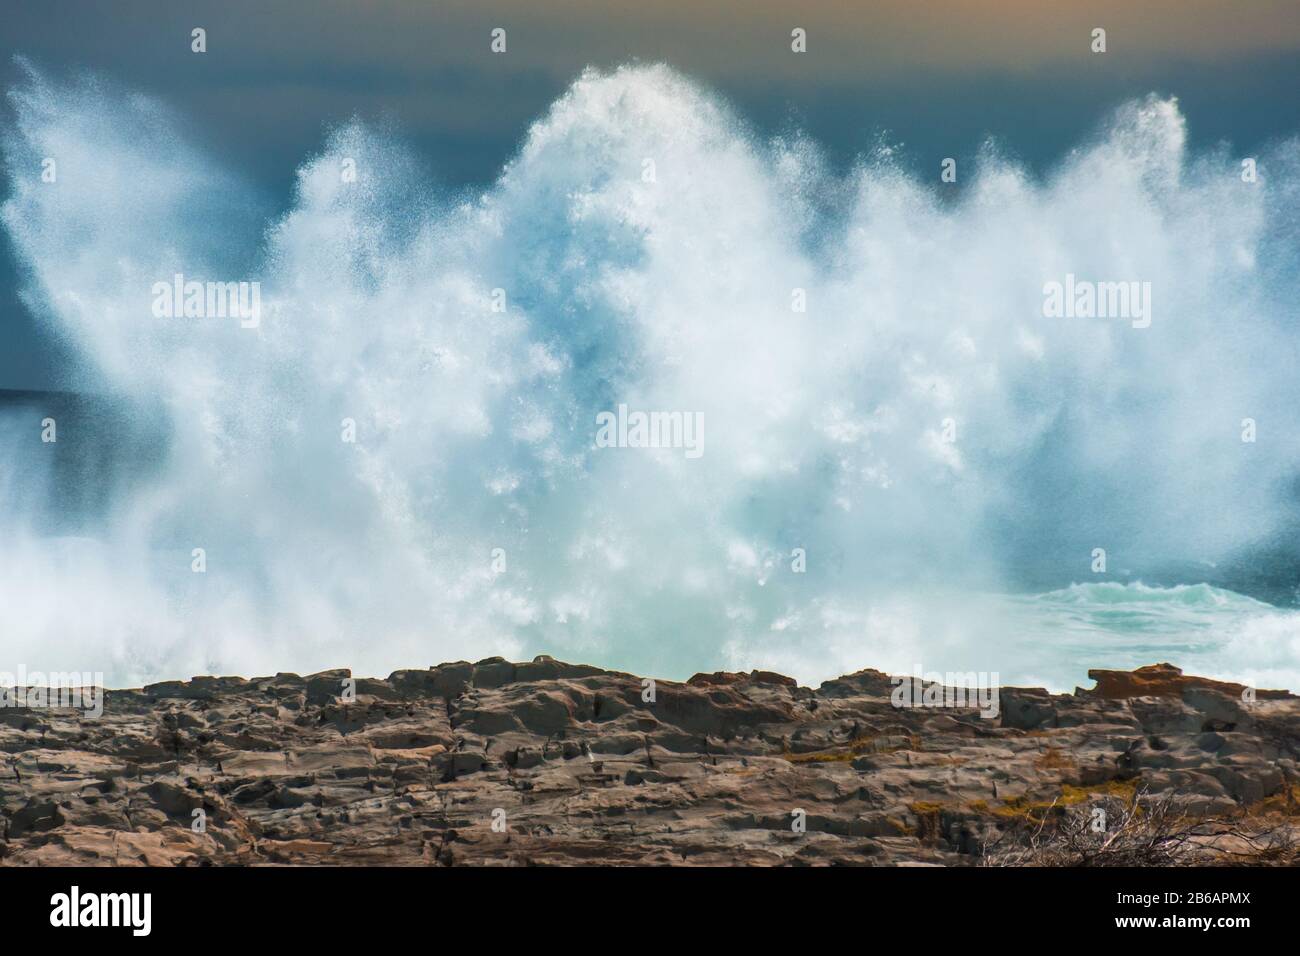 Un'enorme ondata che si infrangono contro le rocce a Tempeste River Mouth, Tsitsikamma National Park, Sud Africa Foto Stock